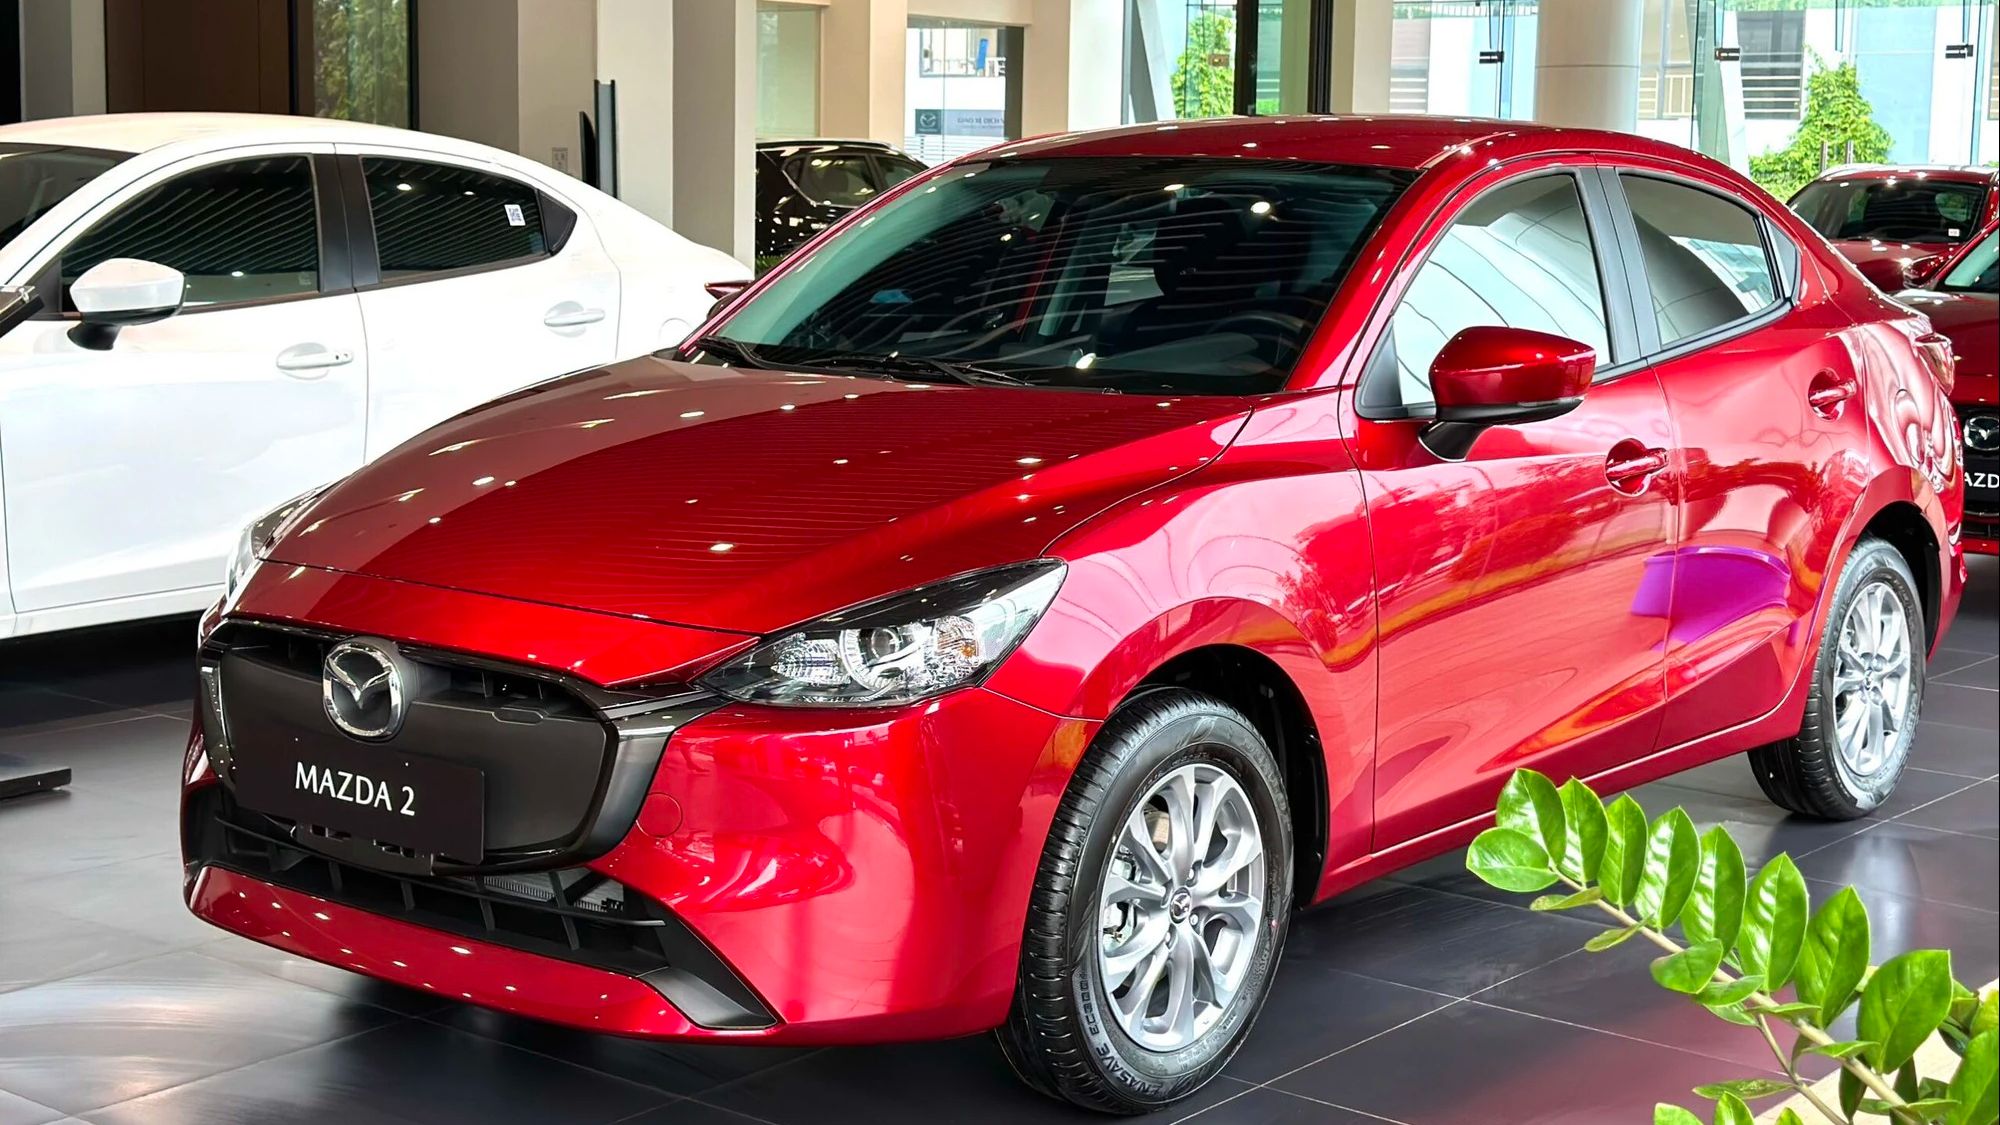 Mazda tiếp tục điều chỉnh giá bán nhiều mẫu xe  - Ảnh 1.